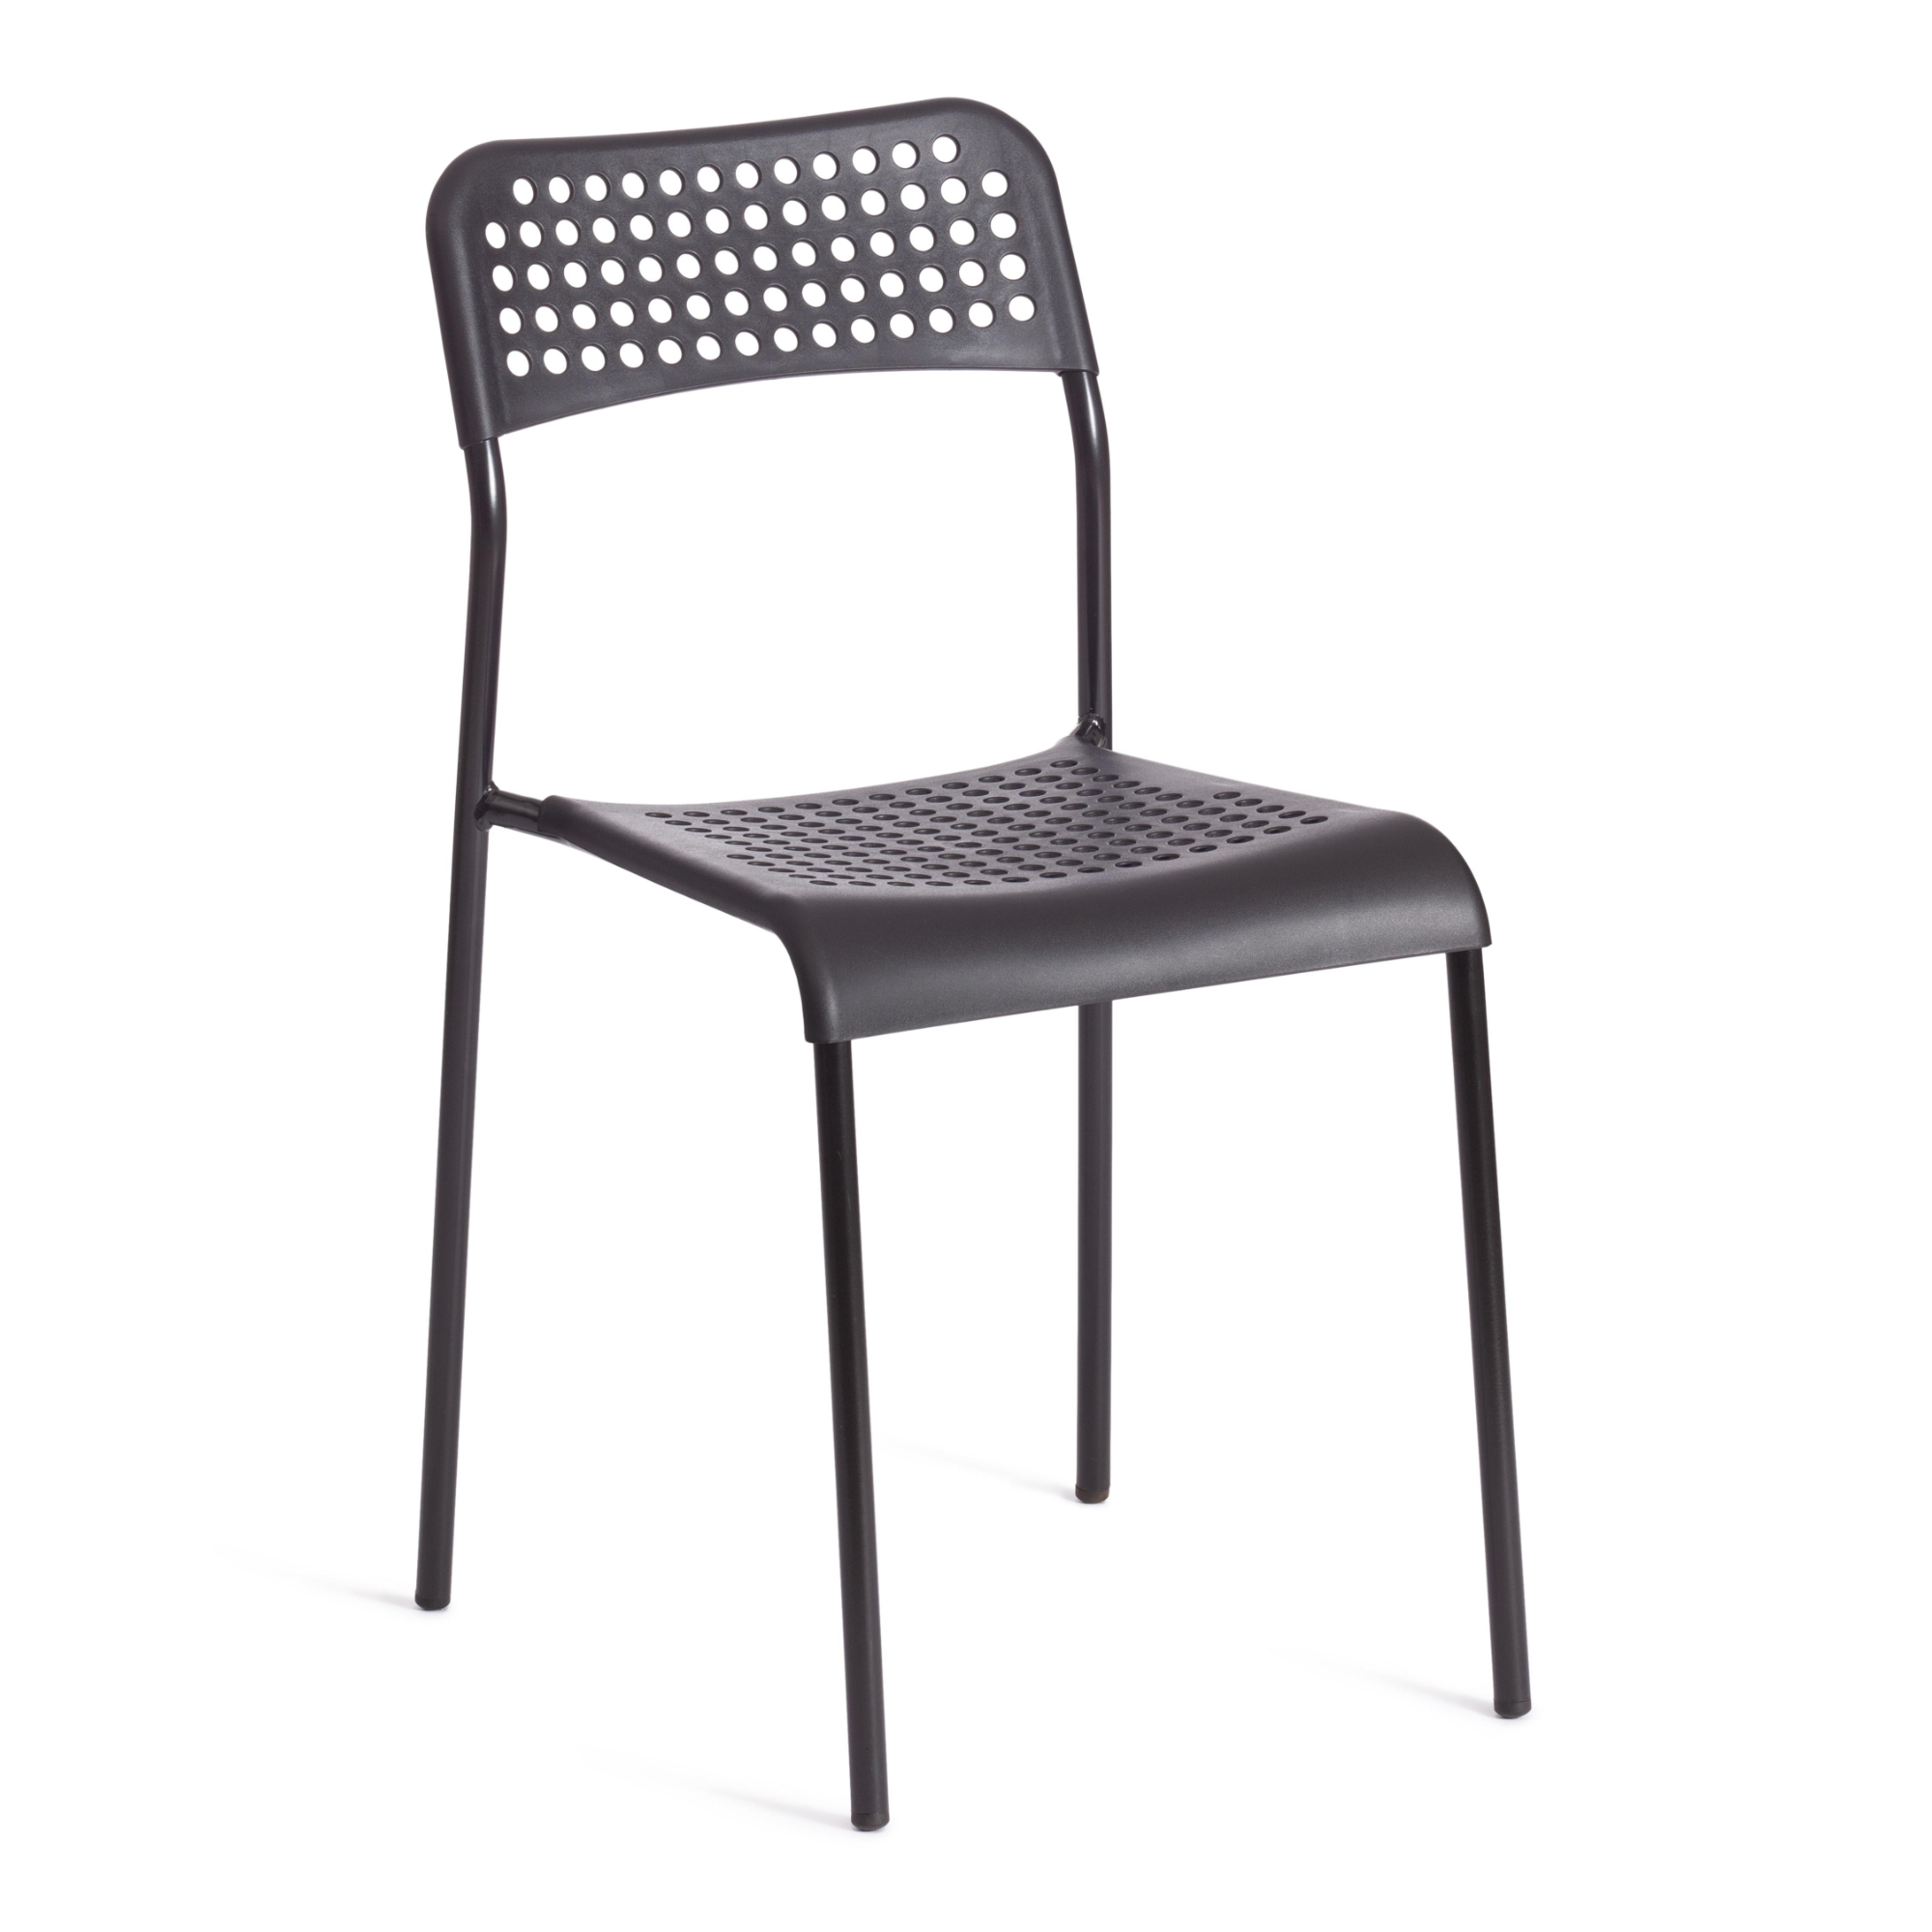 Стул ТС Adde черный пластиковый с металлическими ножками 39х49х78 см современный стул fallon с металлическими ножками зеленый бархат